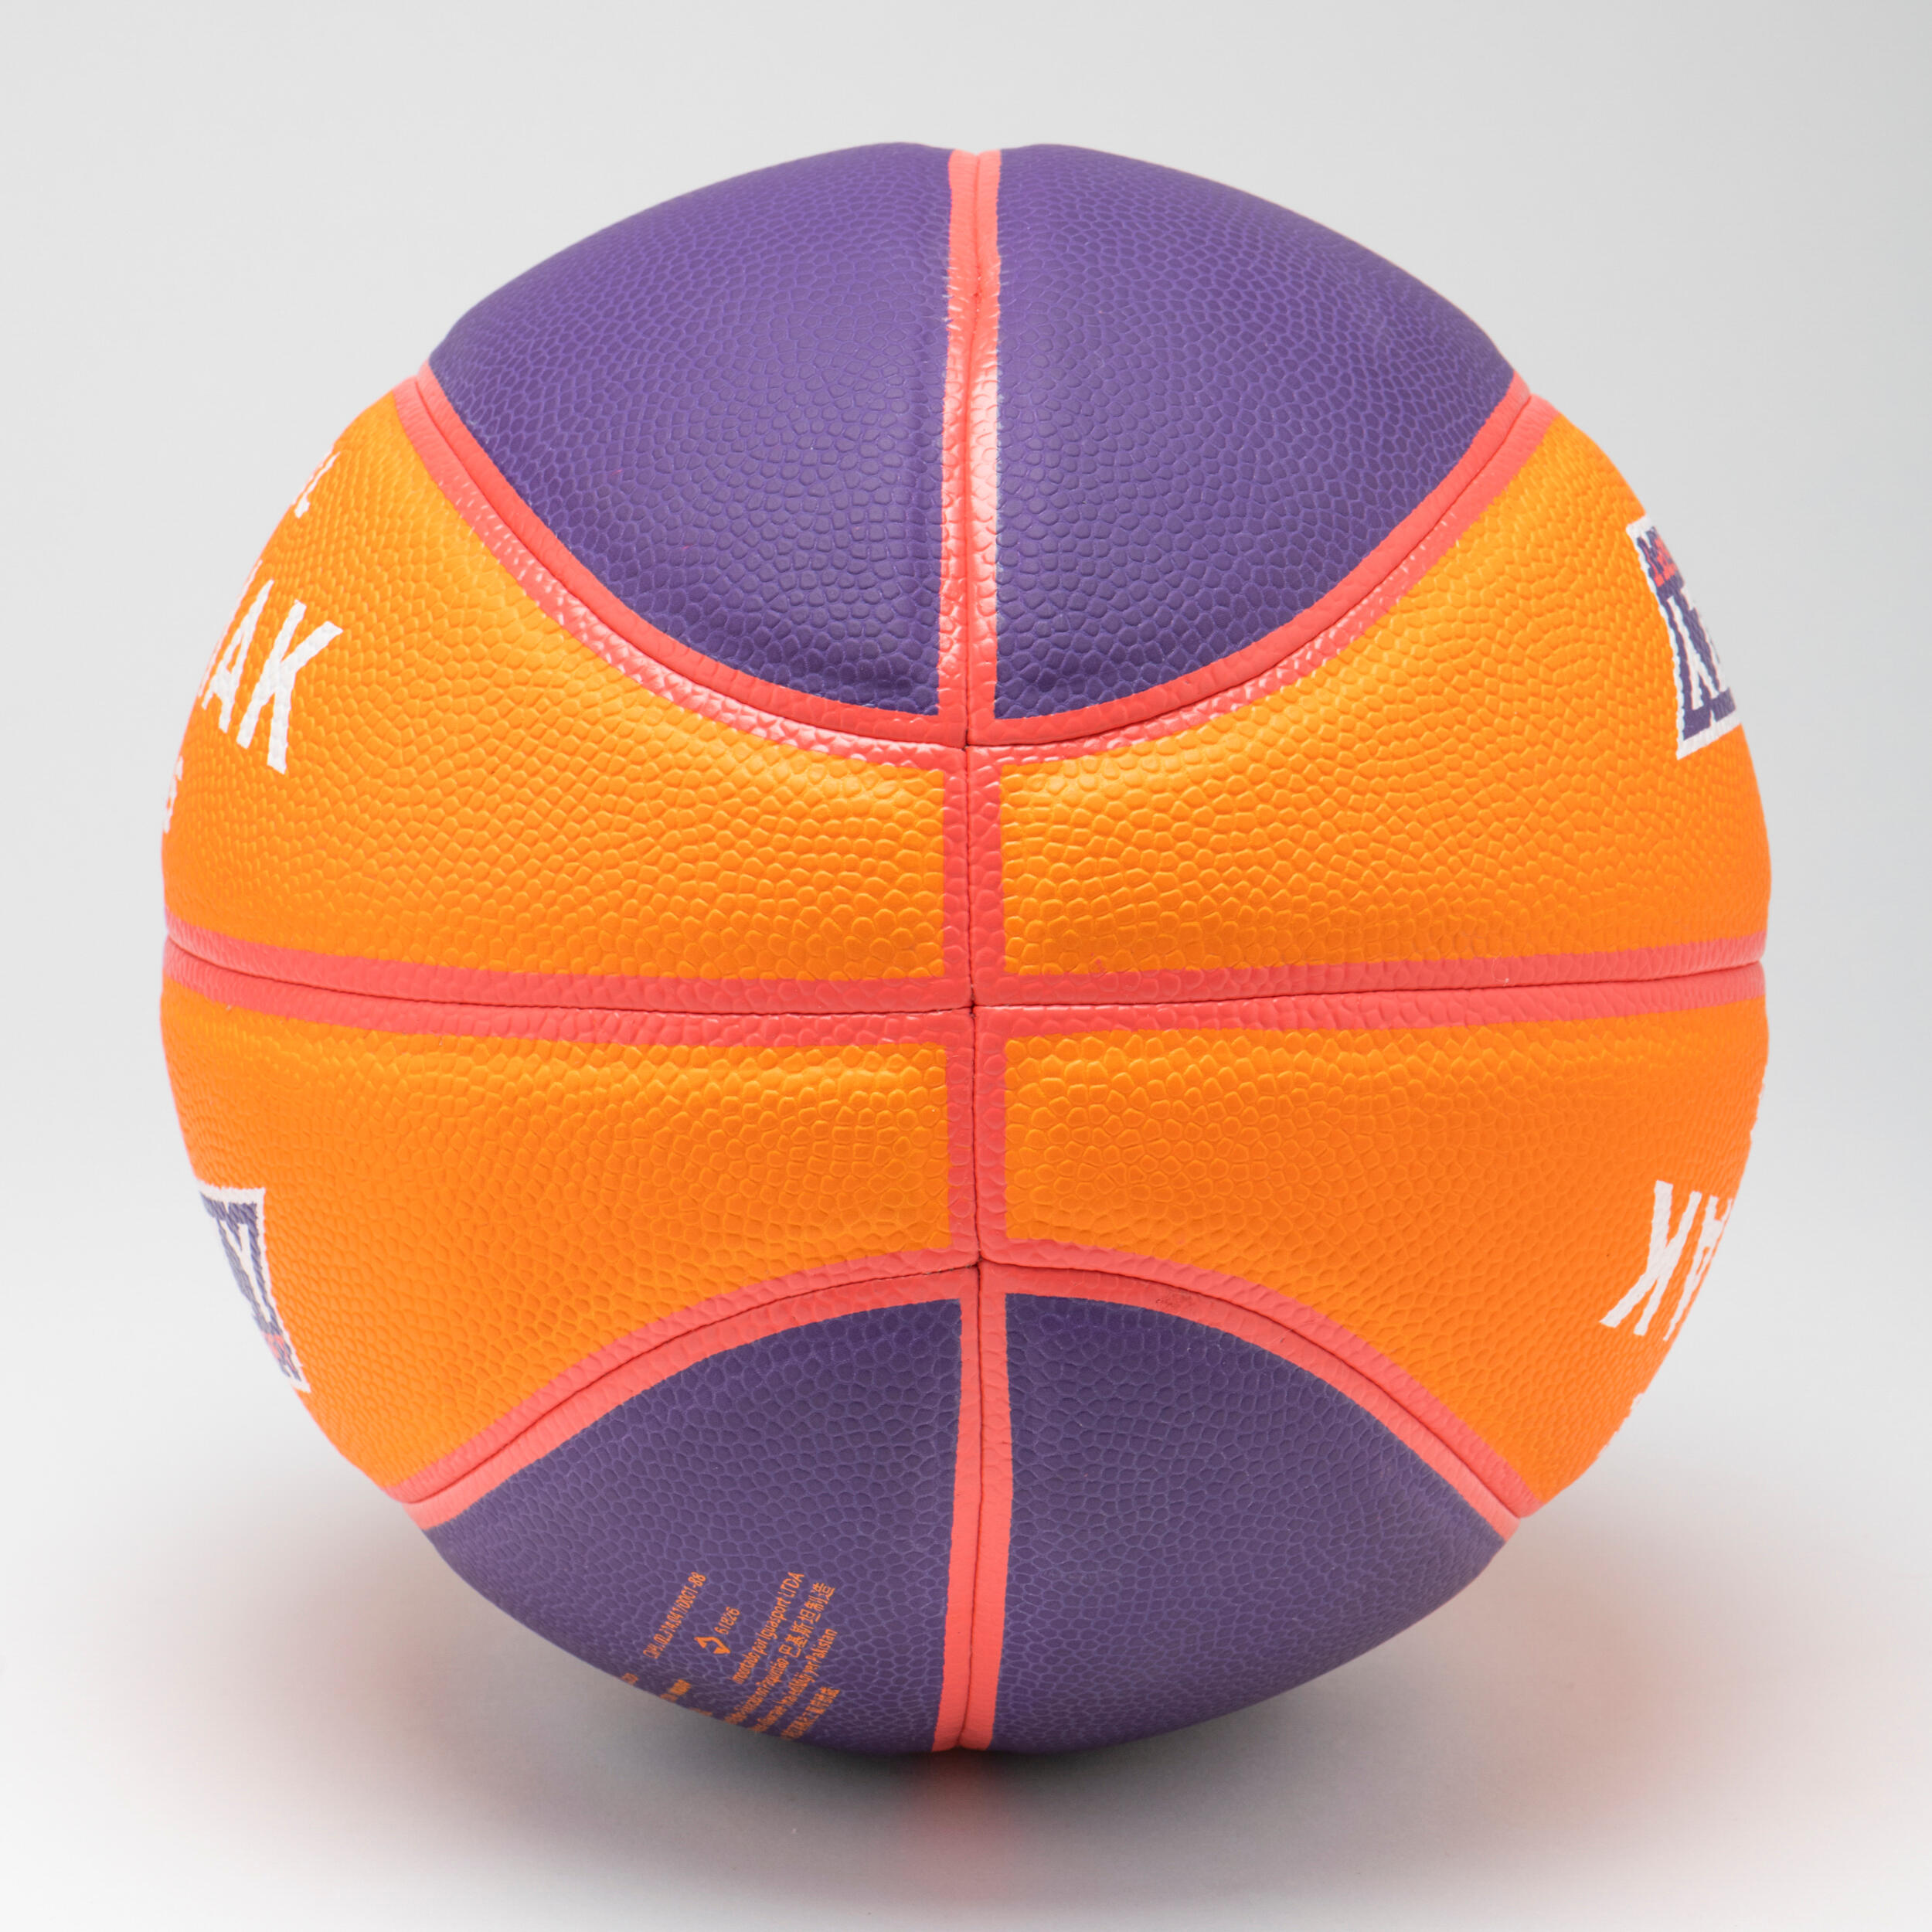 K900 Wizzy Ball - Orange/Purple 4/7